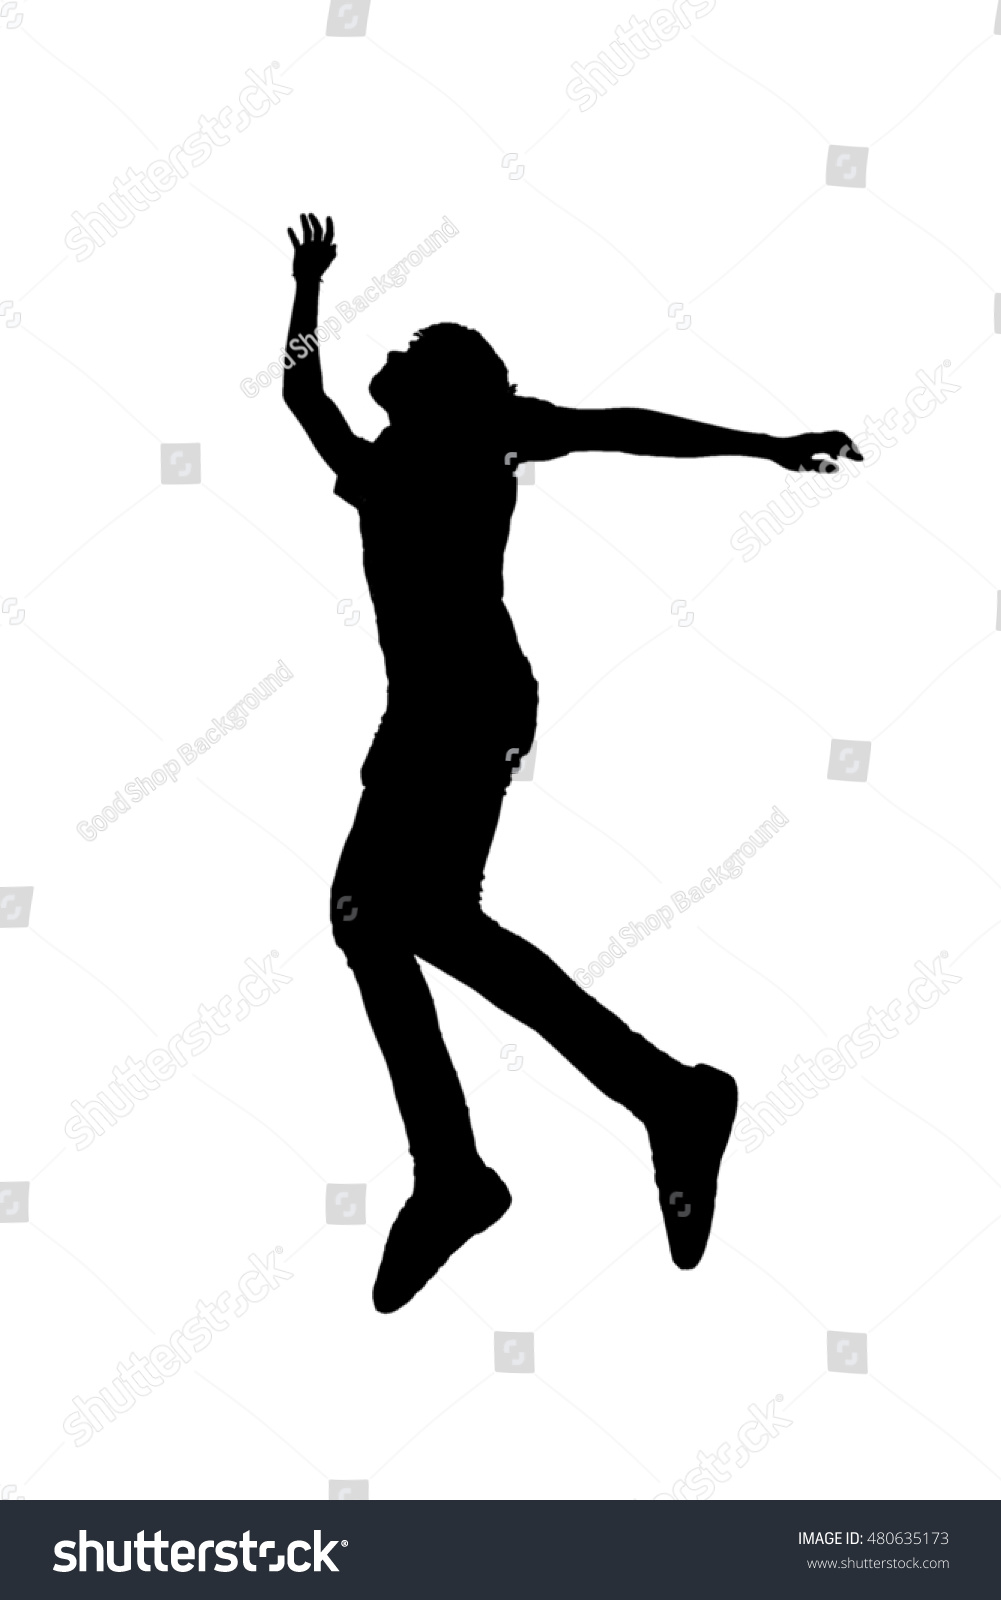 Man Jump White Background Stock Illustration 480635173 - Shutterstock